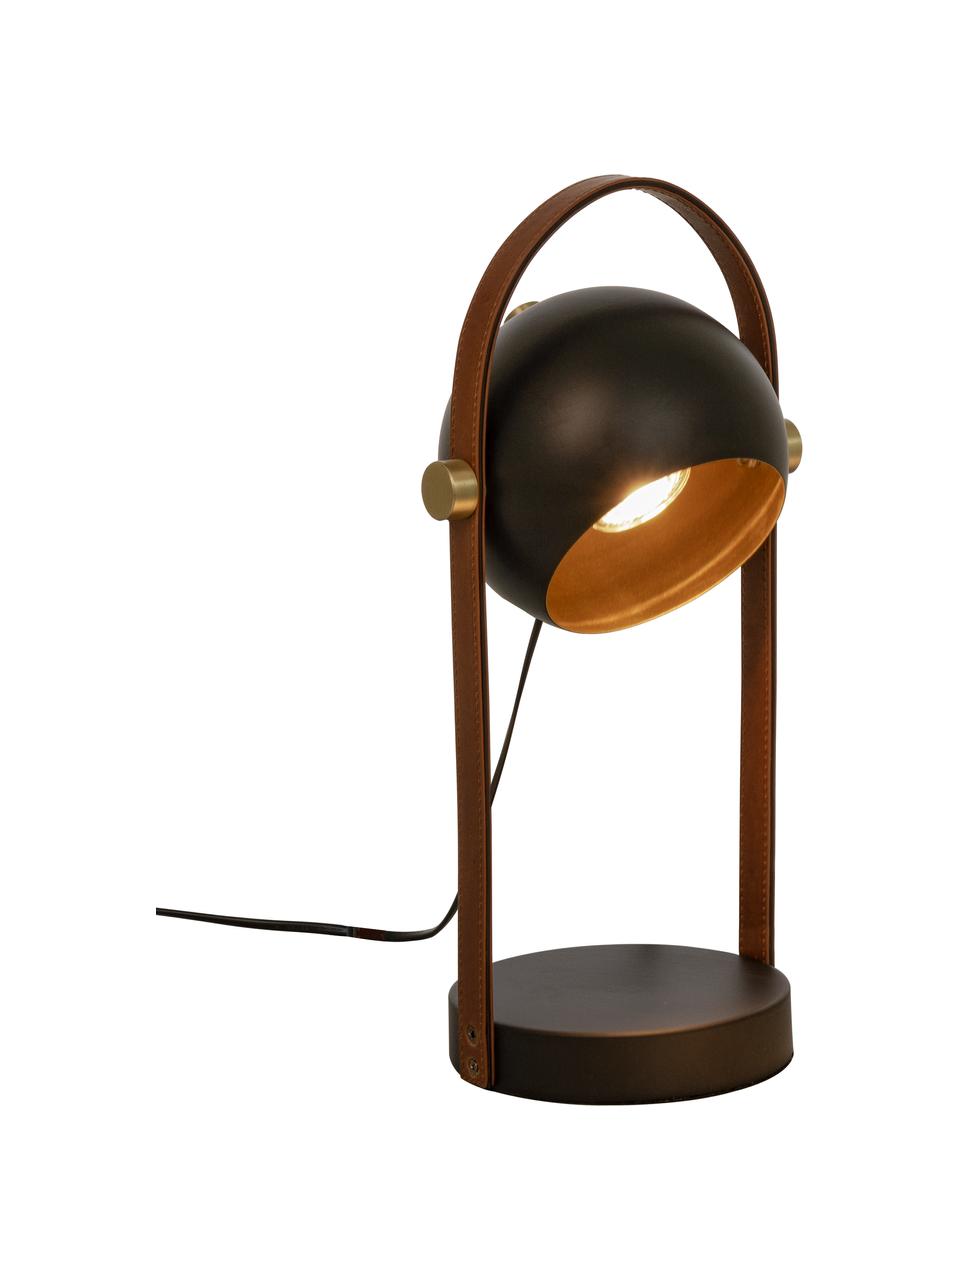 Tischlampe Bow mit Leder-Dekor, Lampenschirm: Metall, beschichtet, Lampenfuß: Metall, beschichtet, Braun, Schwarz, B 15 x H 38 cm